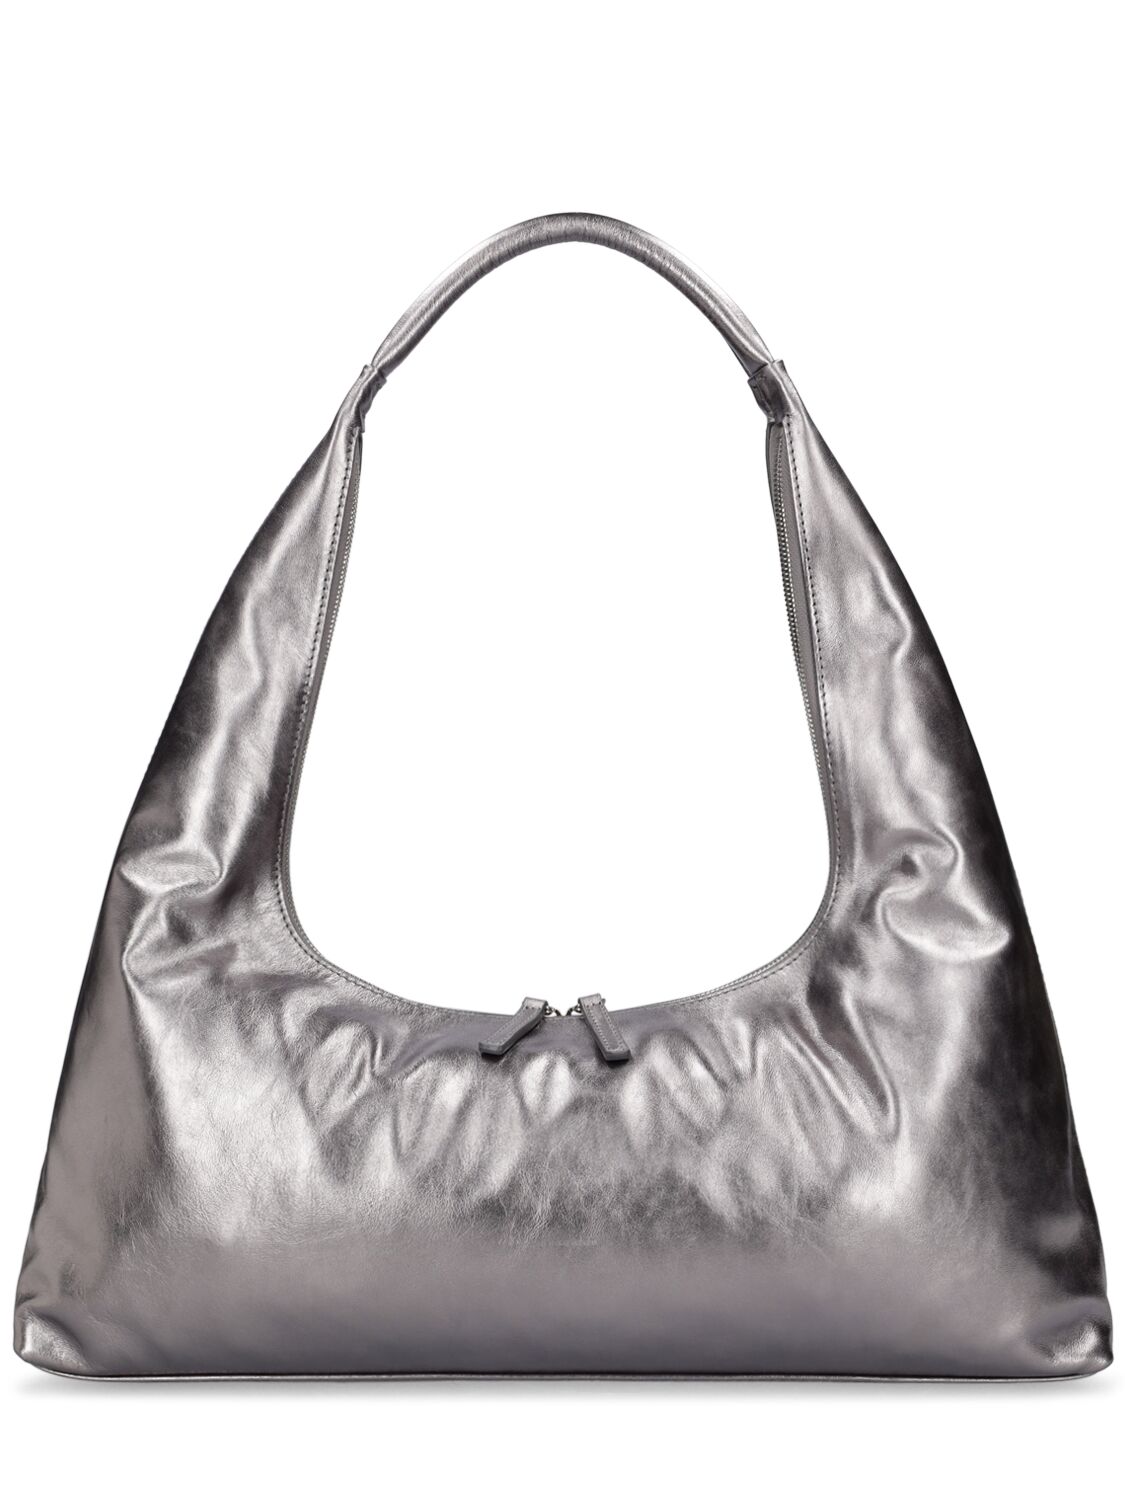 Image of Large Hobo Plain Leather Shoulder Bag